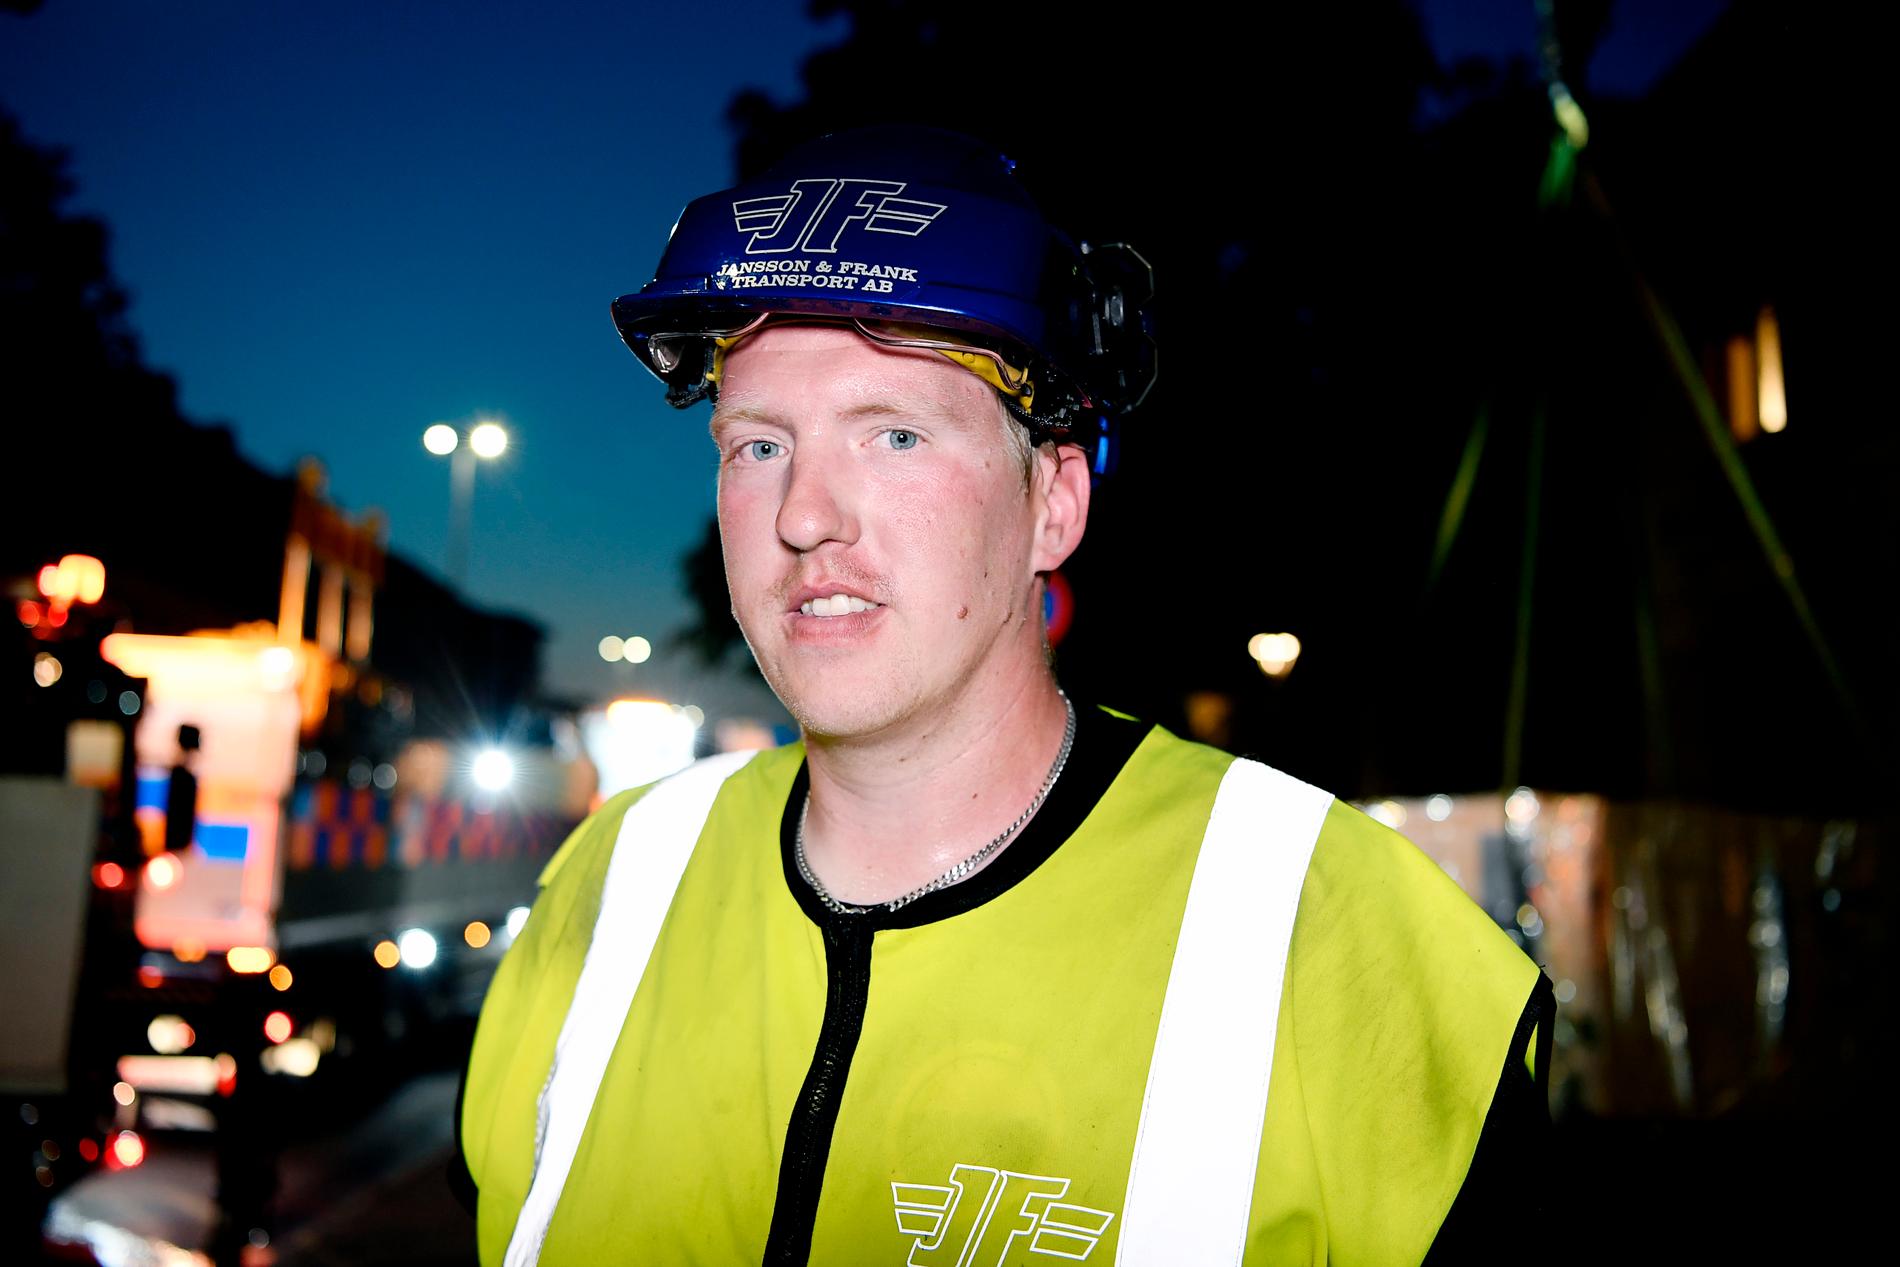 Nicklas Jansson arbetade i natt för att sanera och säkra explosionsområdet i Linköping. ”Det är kaos”, säger han.